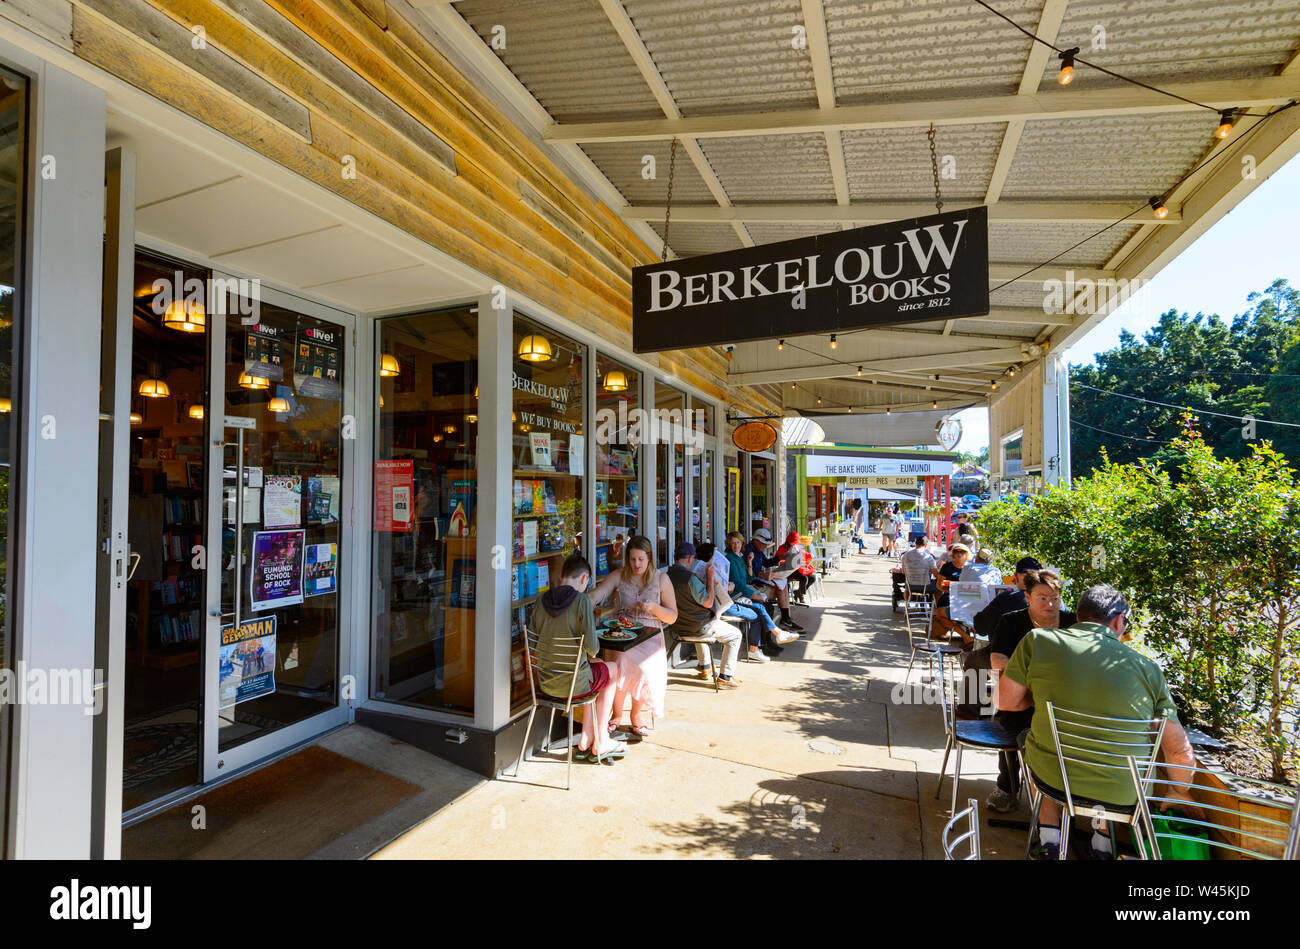 Terrasse des Café an der berühmten Berkelouw Buch Scheune Buchhandlung in der beliebten ländlichen Stadt Eumundi, Sunshine Coast, Queensland, Queensland, Australien Stockfoto